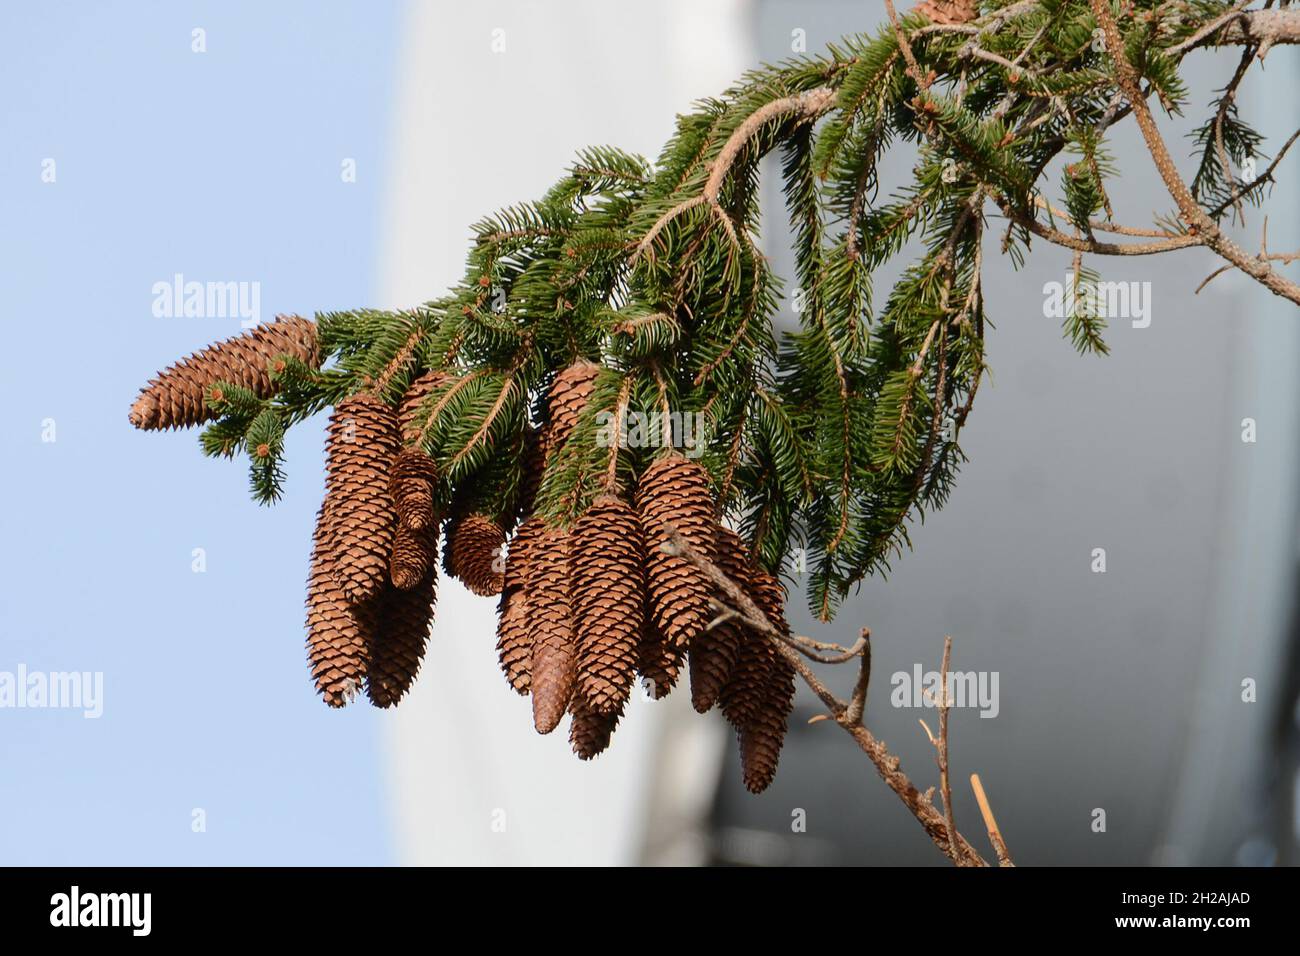 Zapfen eines Fichtenbaumes im Salzkammergut (Österreich) - Cones of a spruce tree in the Salzkammergut (Austria) Stock Photo